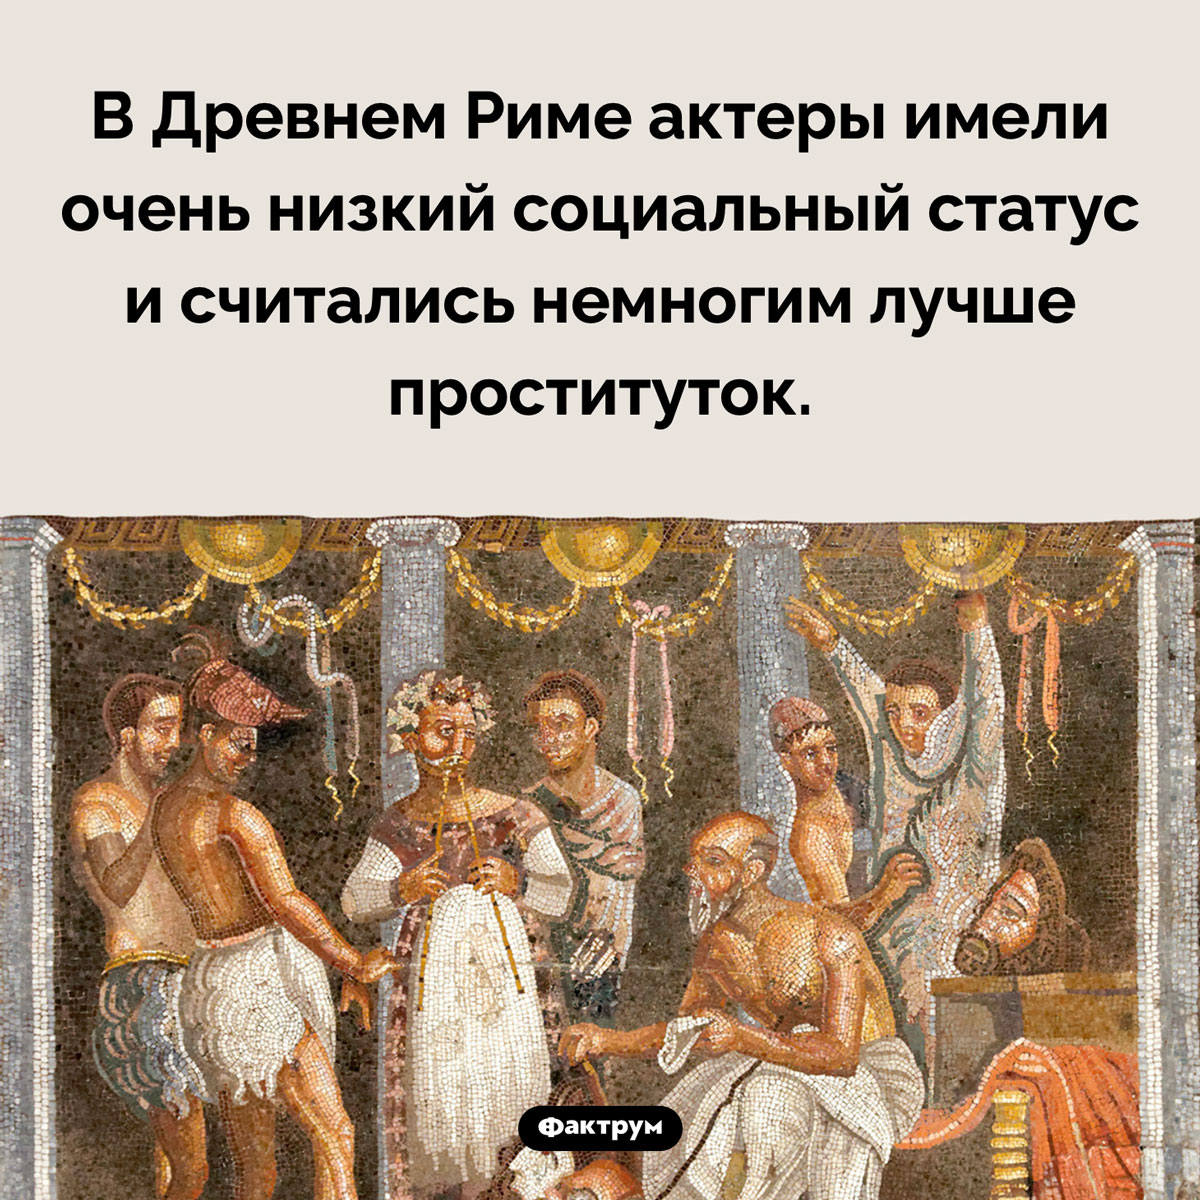 Неуважаемые древнеримские актеры. В Древнем Риме актеры имели очень низкий социальный статус и считались немногим лучше проституток.